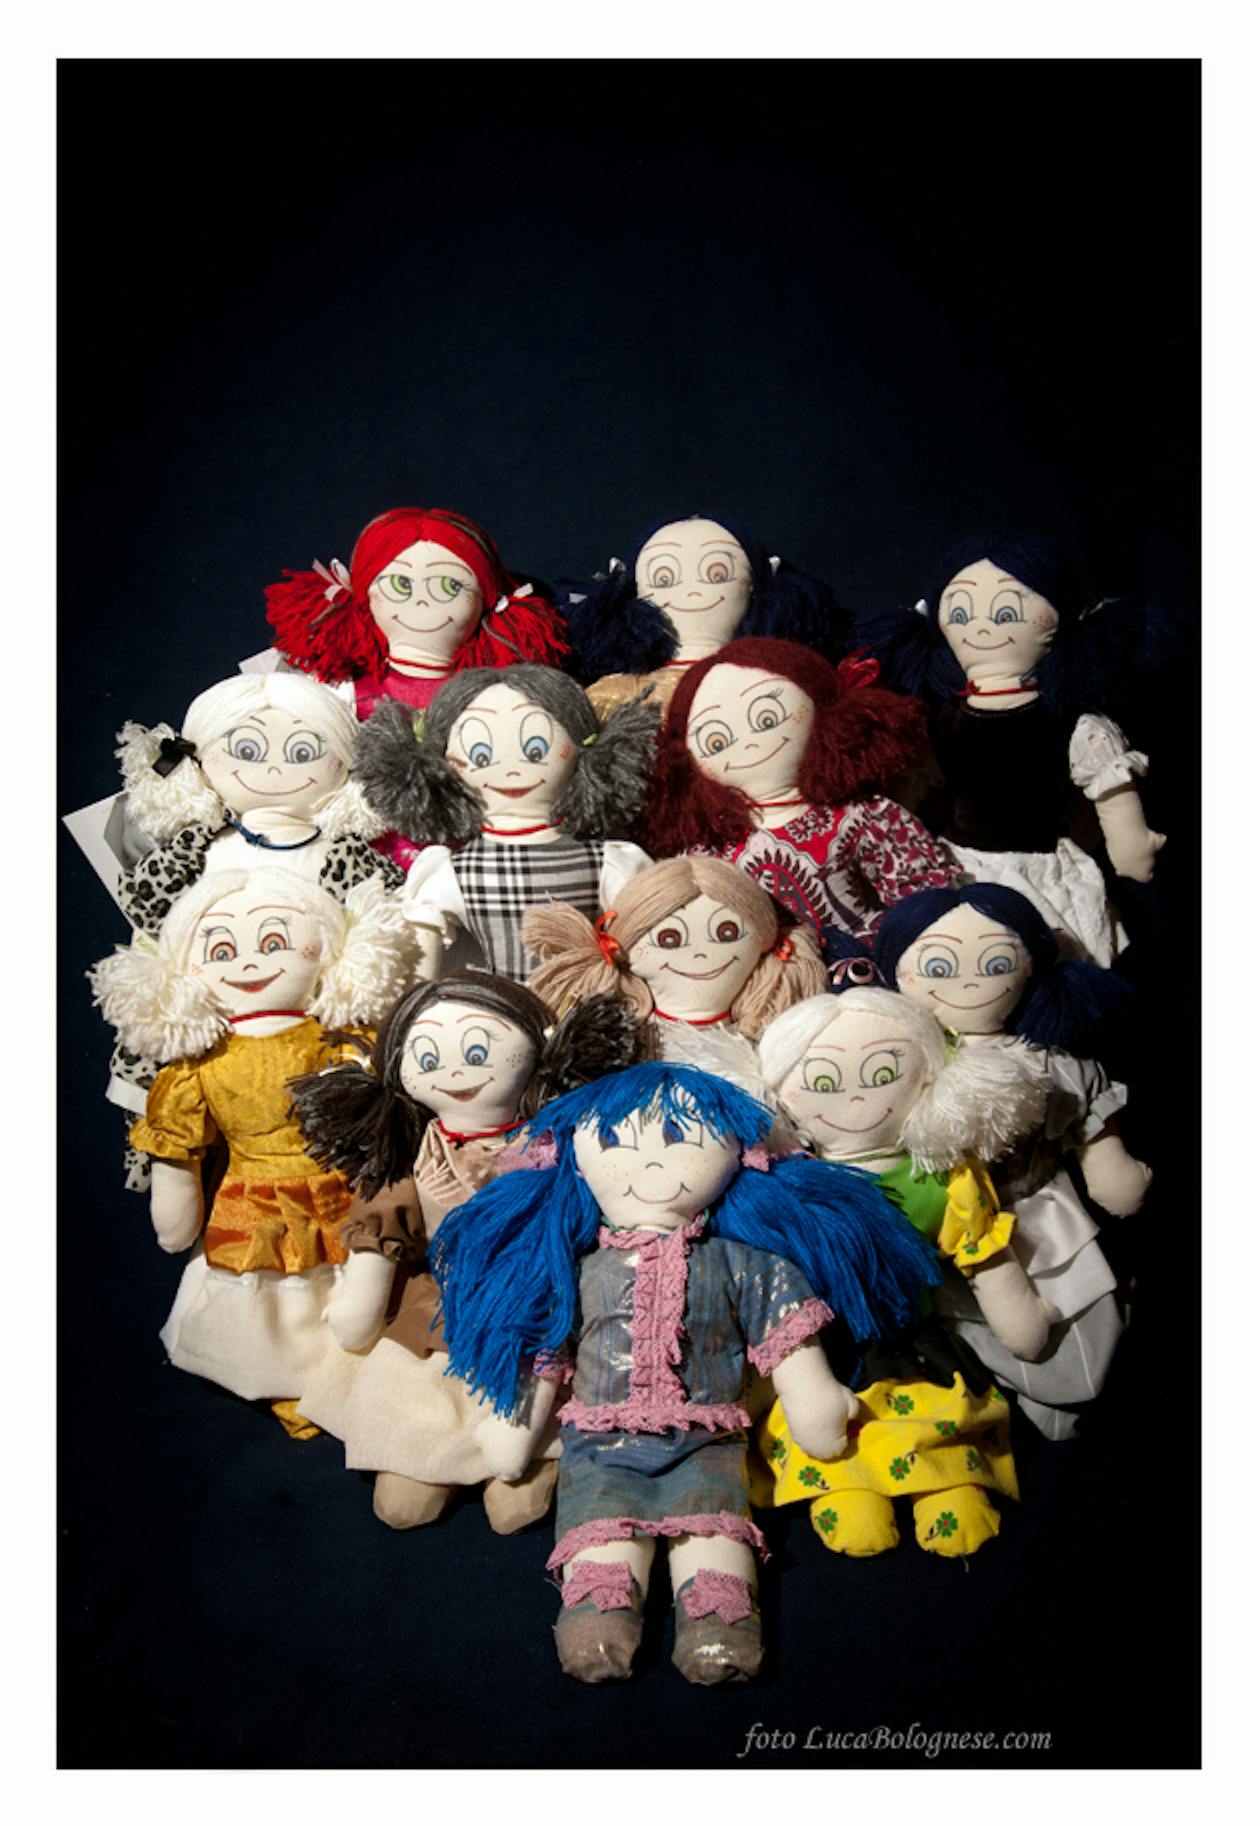 Carcere Dozza: a Bologna mille bambole cucite per beneficenza